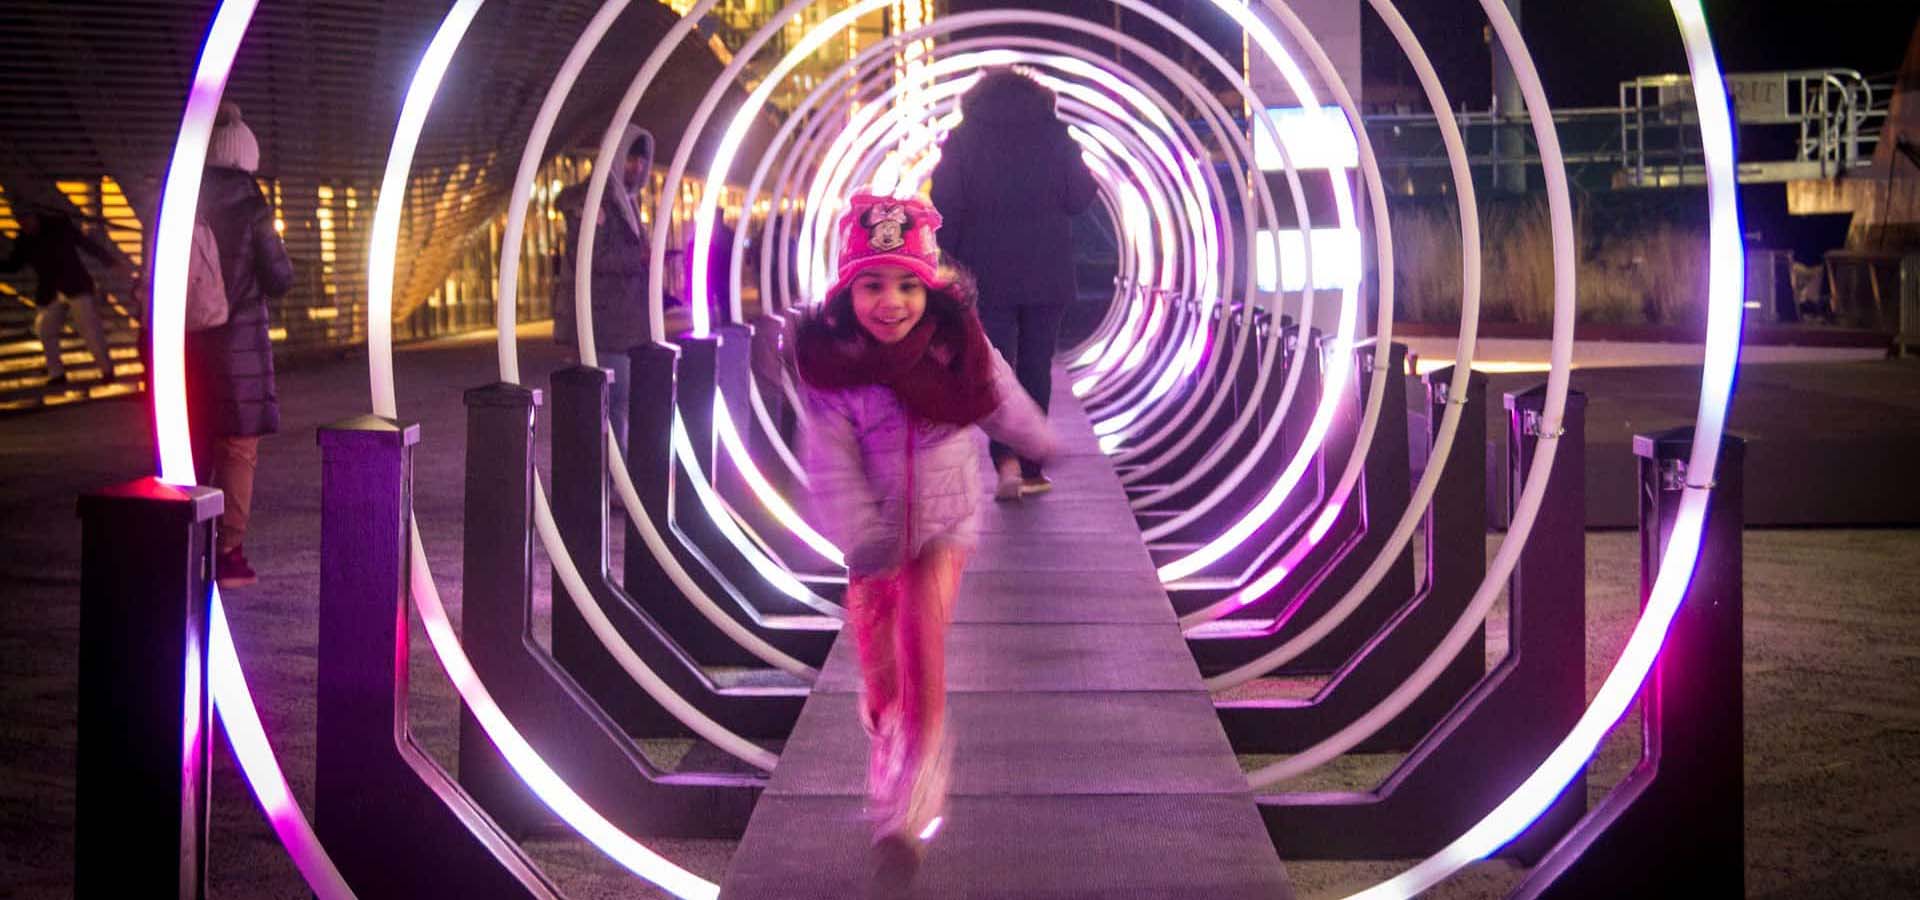 Girl walking through a neon tube outdoor art installation.